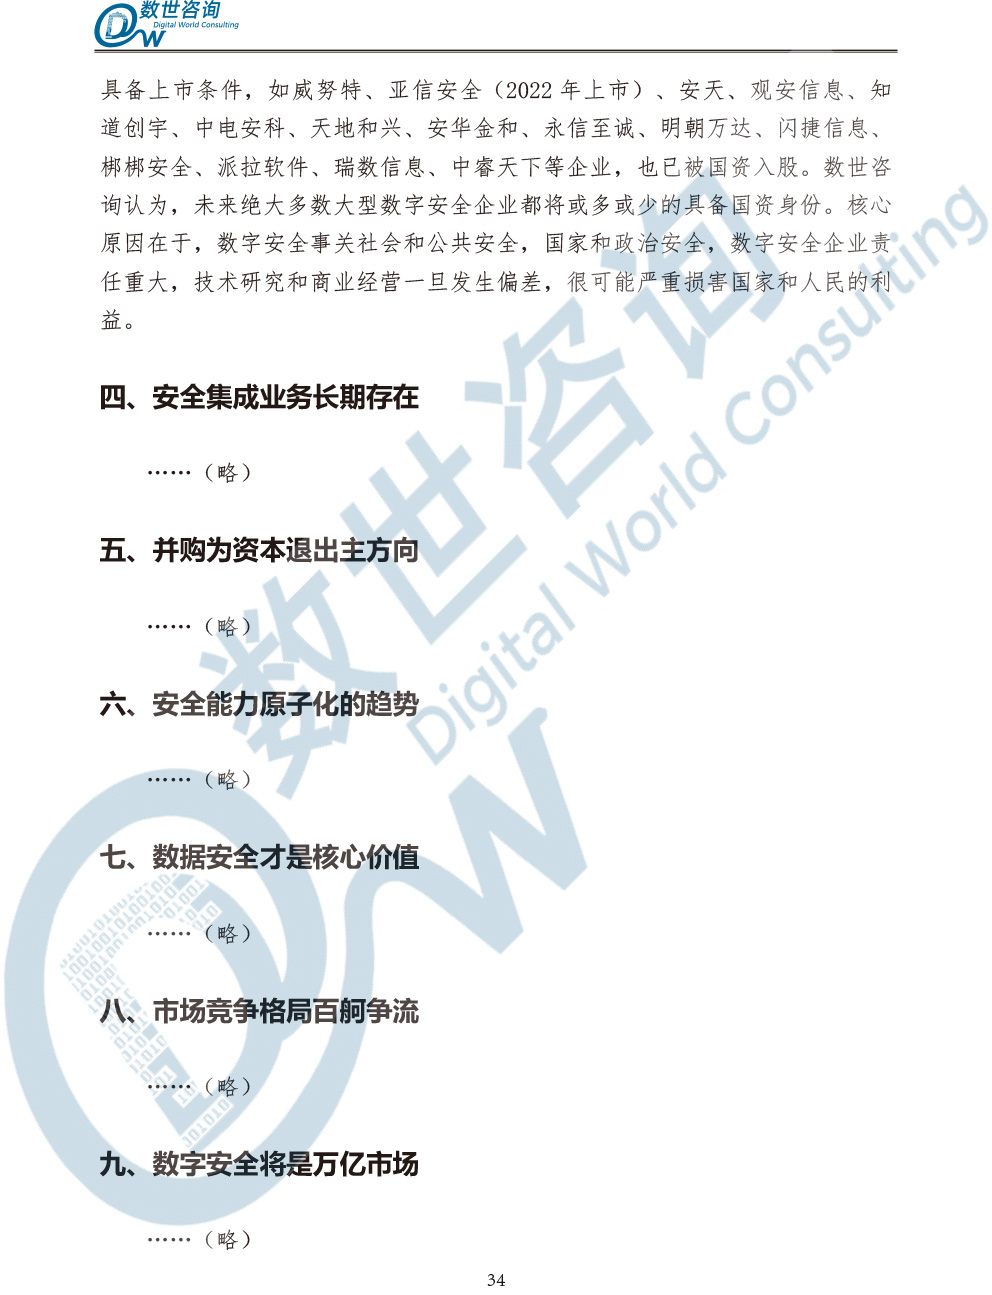 中国数字安全产业统计与分析报告(2022)图-41.jpg